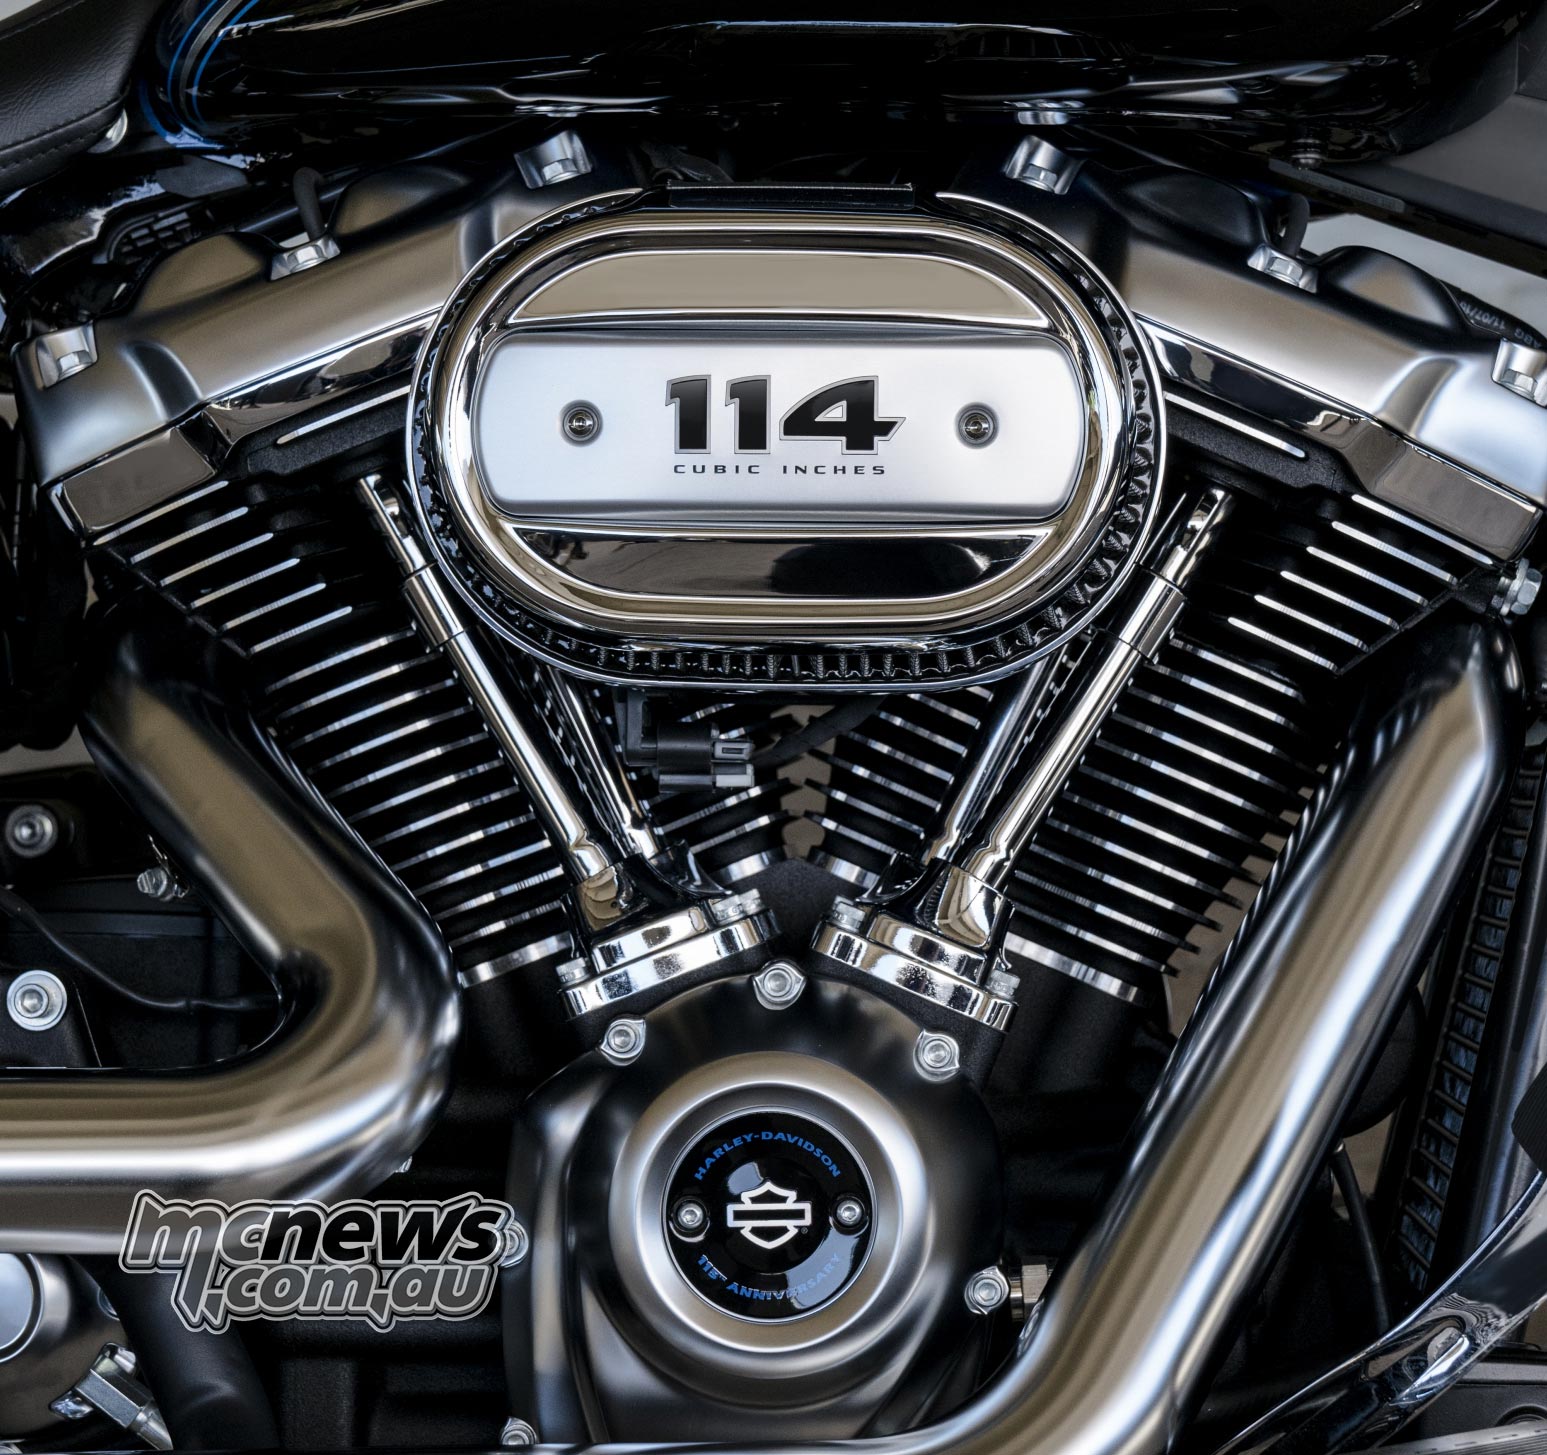 2019 Harley  Davidson  Range 8 New Softails 114c i 